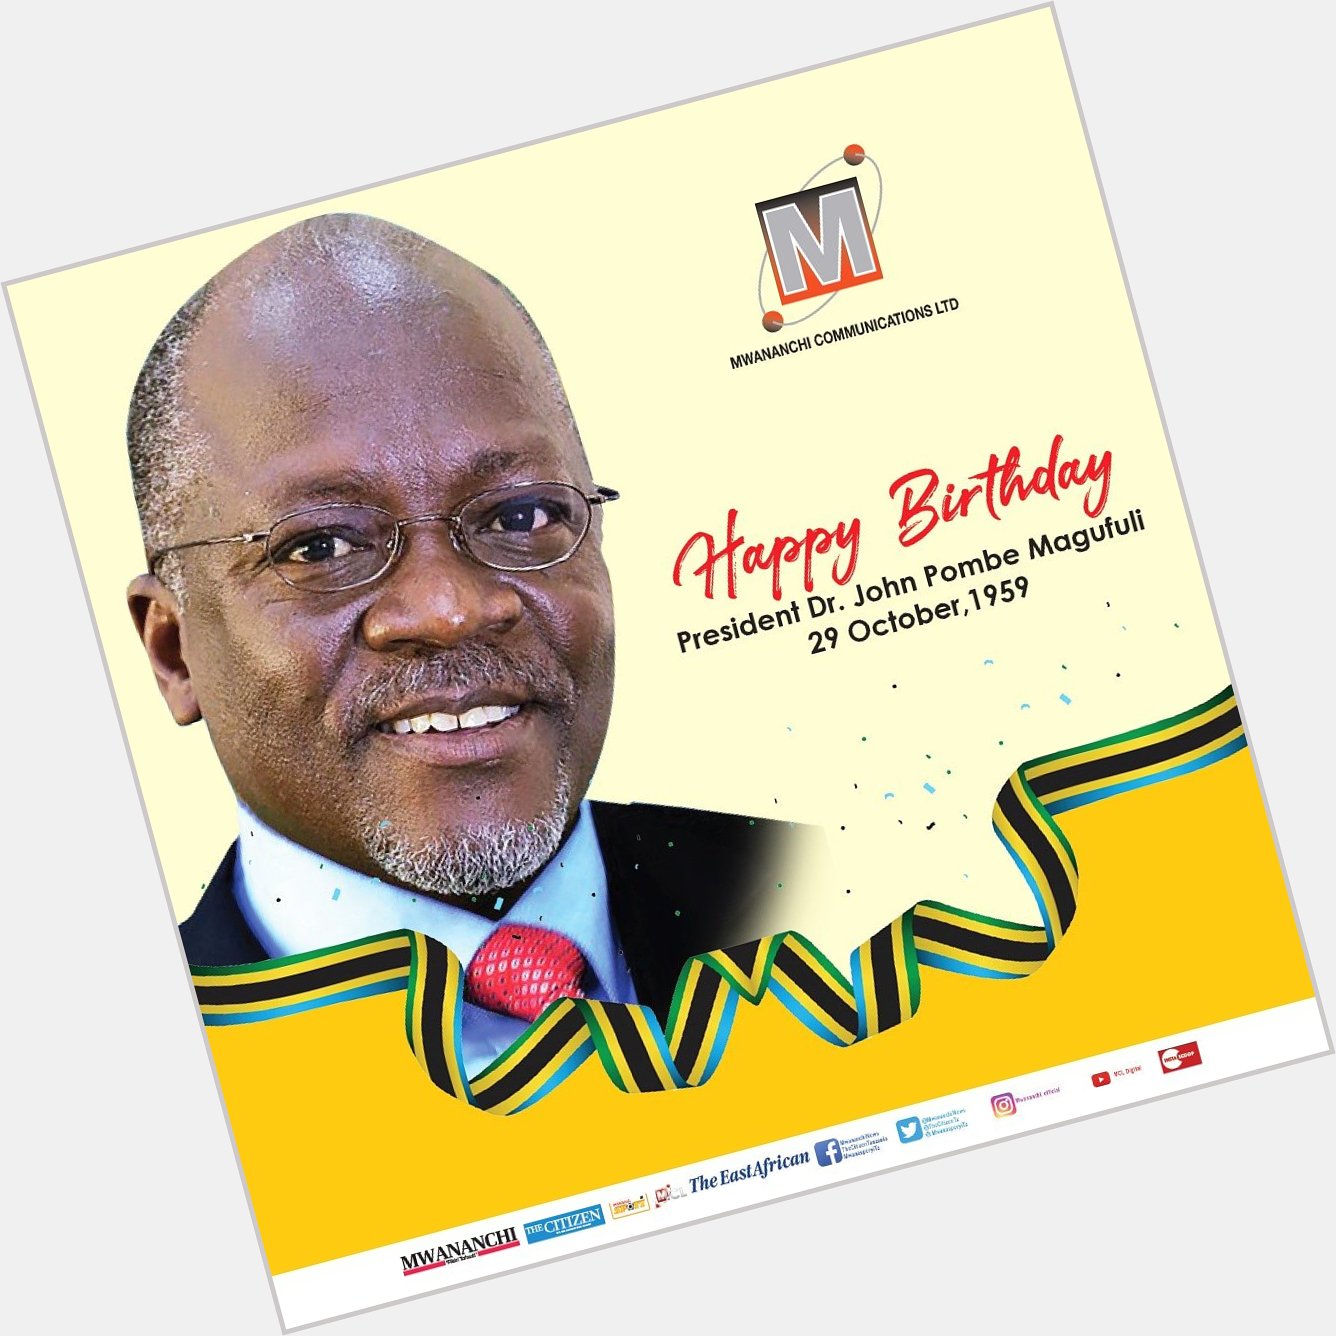 Happy Birthday President Dr. John Pombe Magufuli 